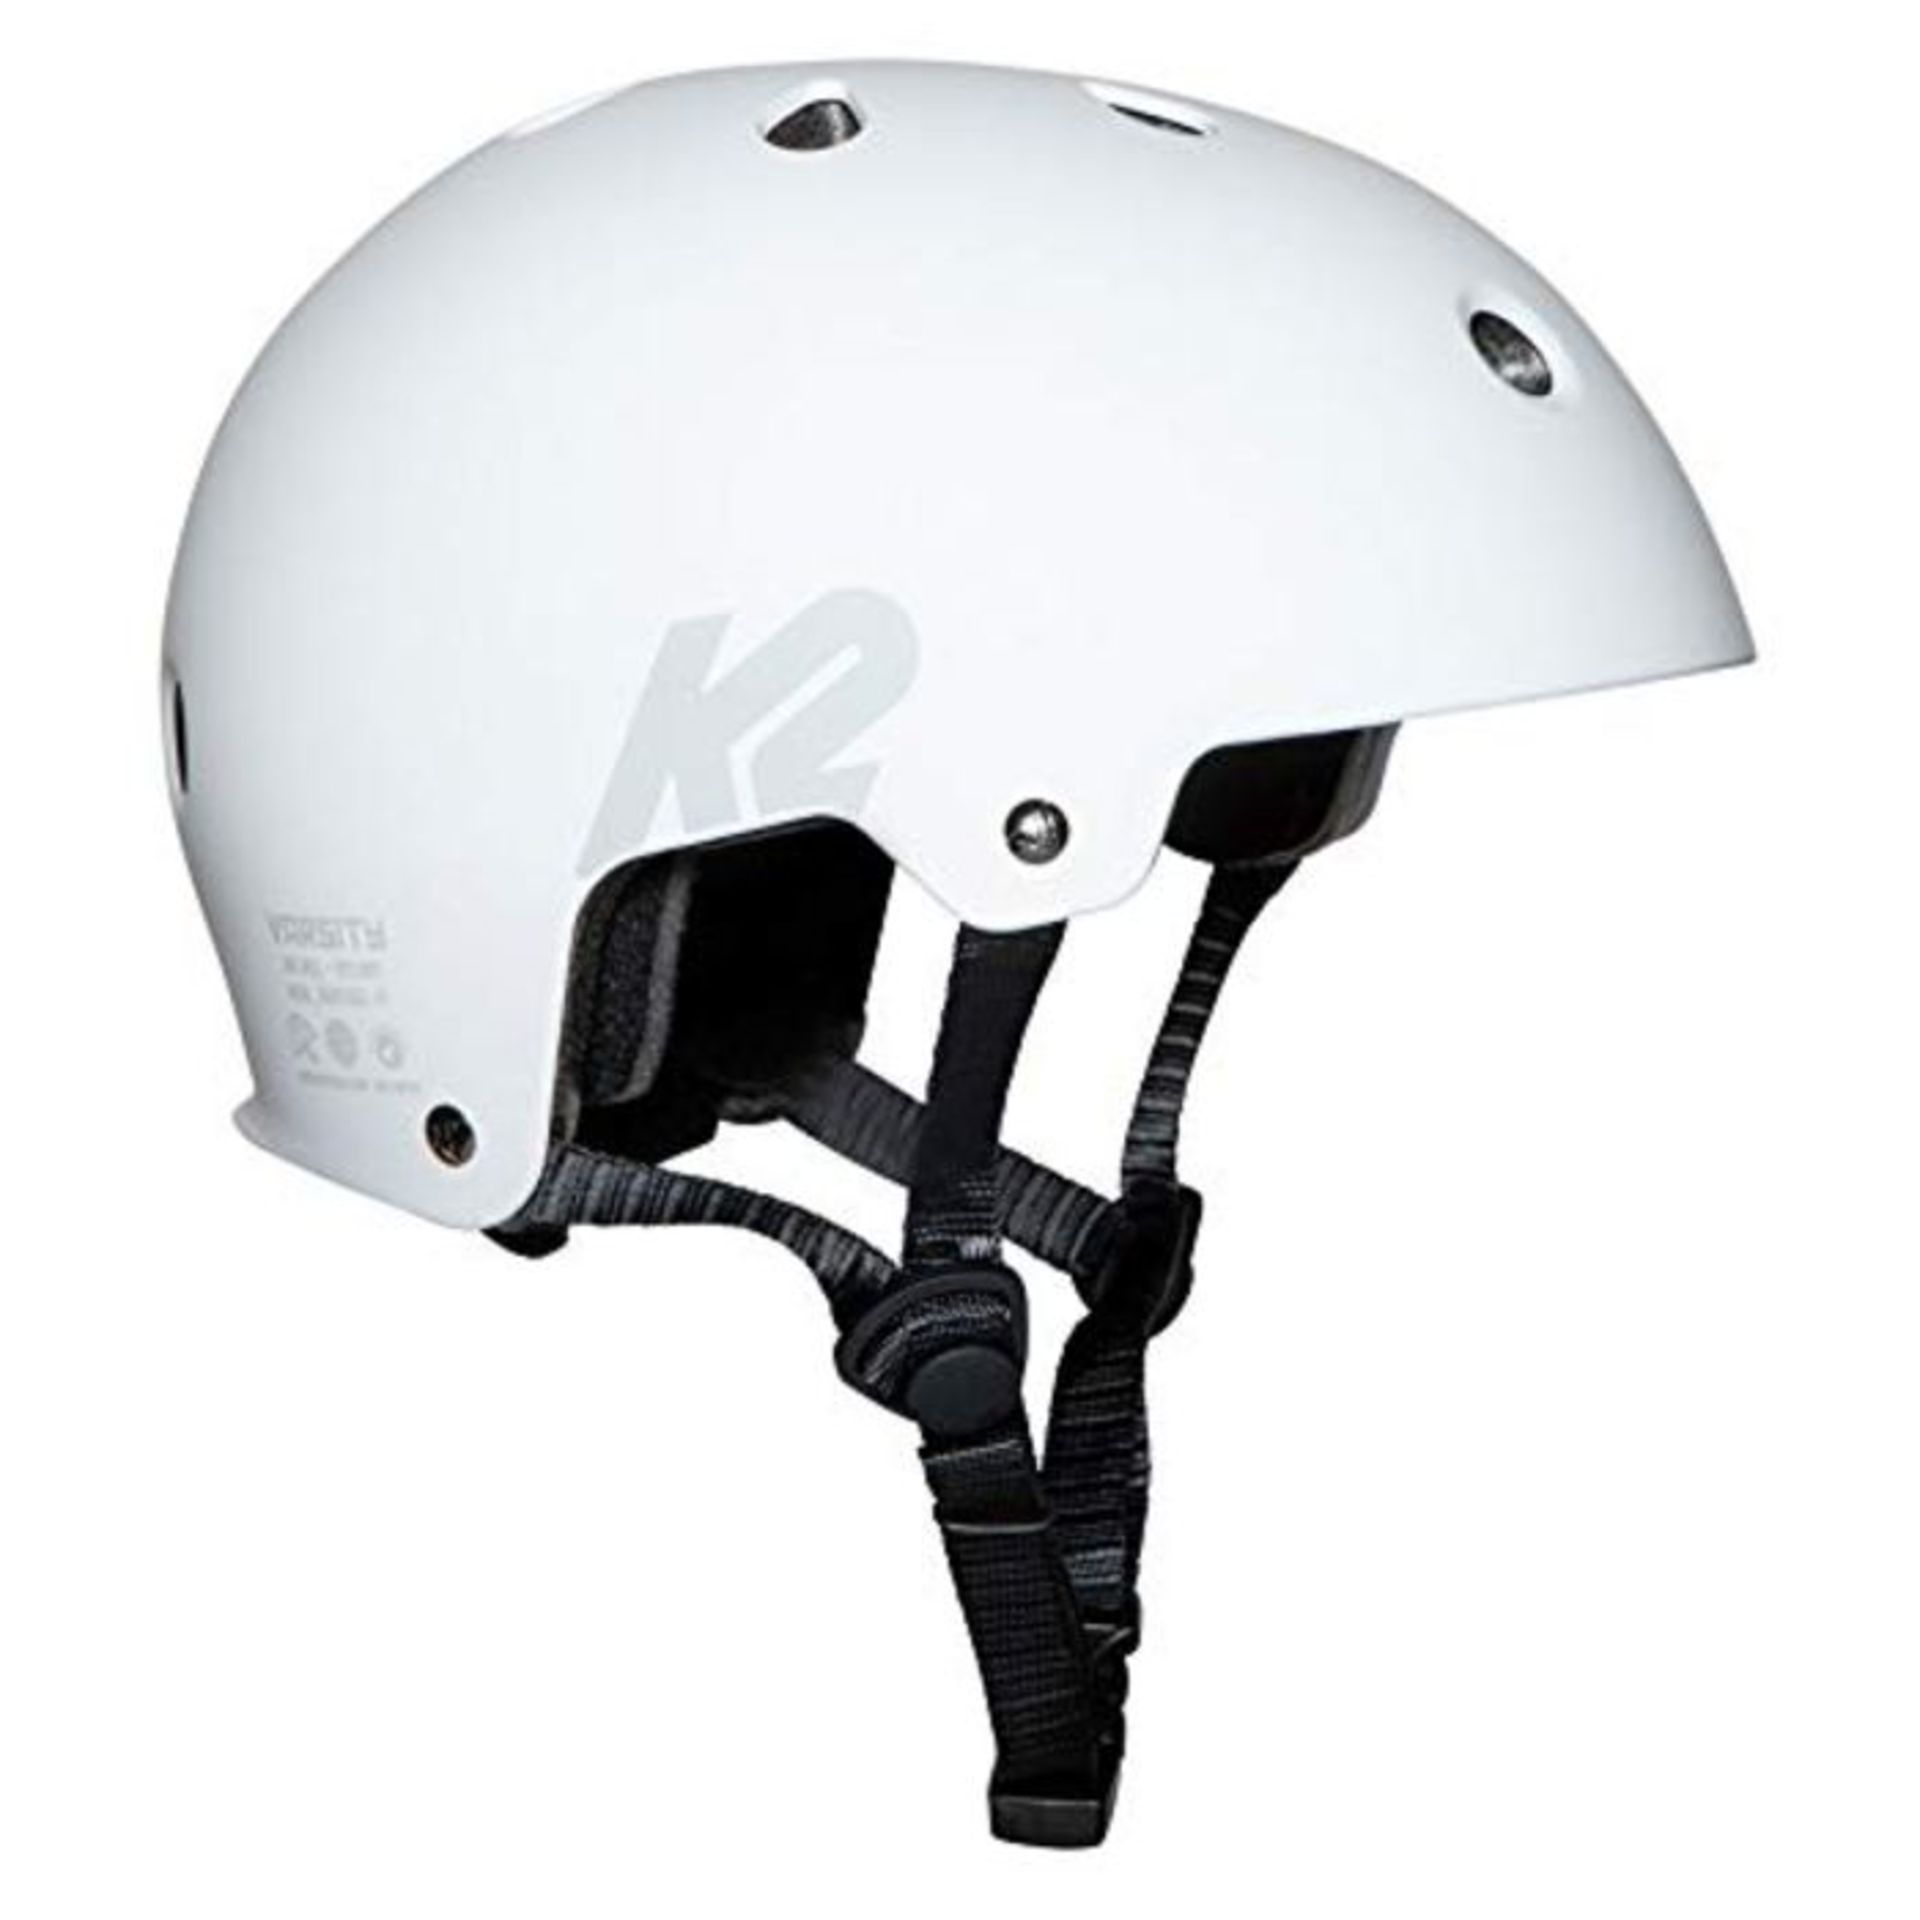 K2 Skate Unisex's VARSITY HELMET Protective, White, L